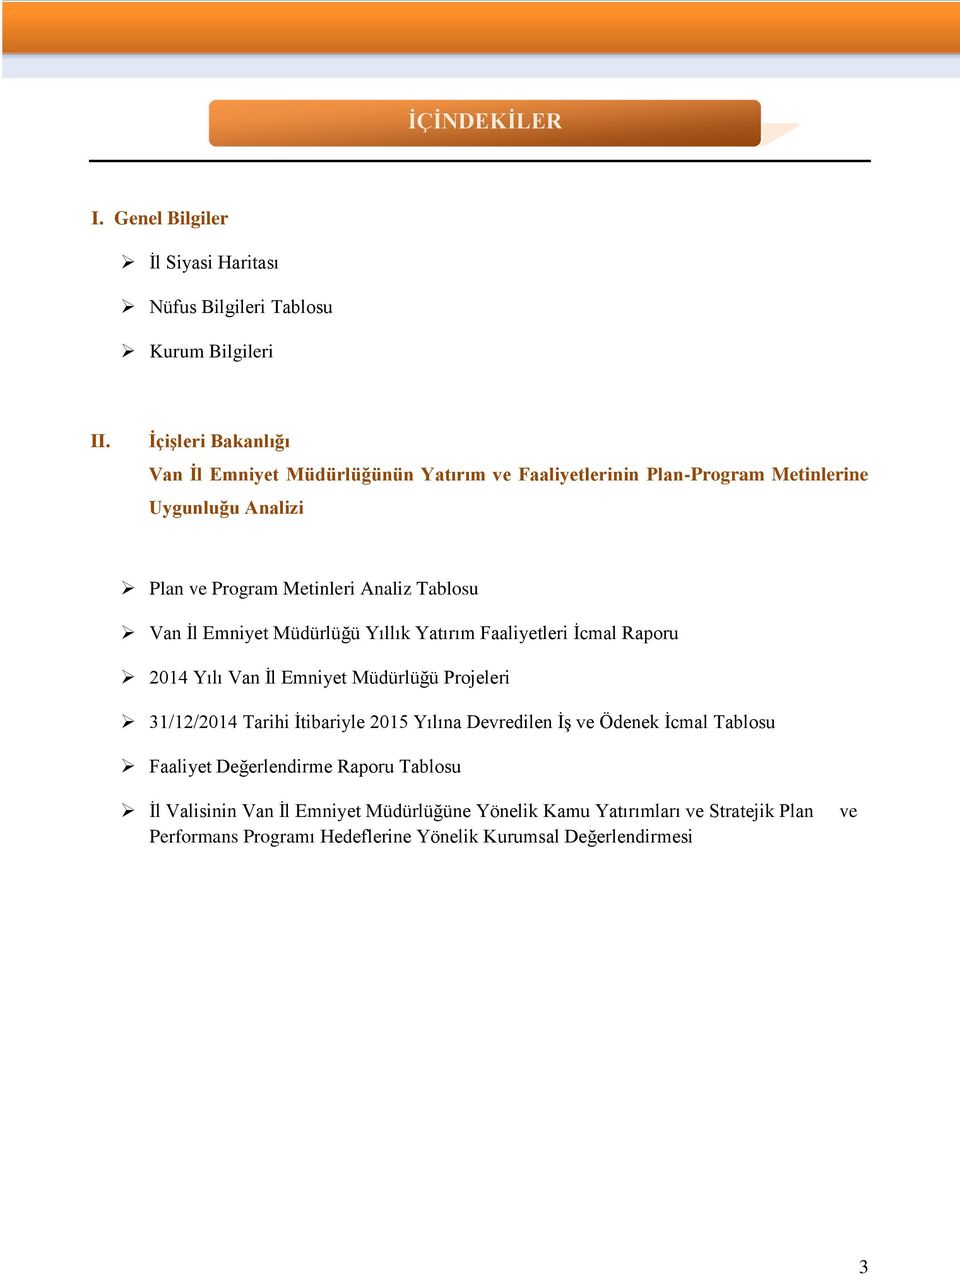 Yıllık Yatırım i İcmal Raporu 2014 Yılı Projeleri 31/12/2014 Tarihi İtibariyle 2015 Yılına Devredilen İş ve Ödenek İcmal